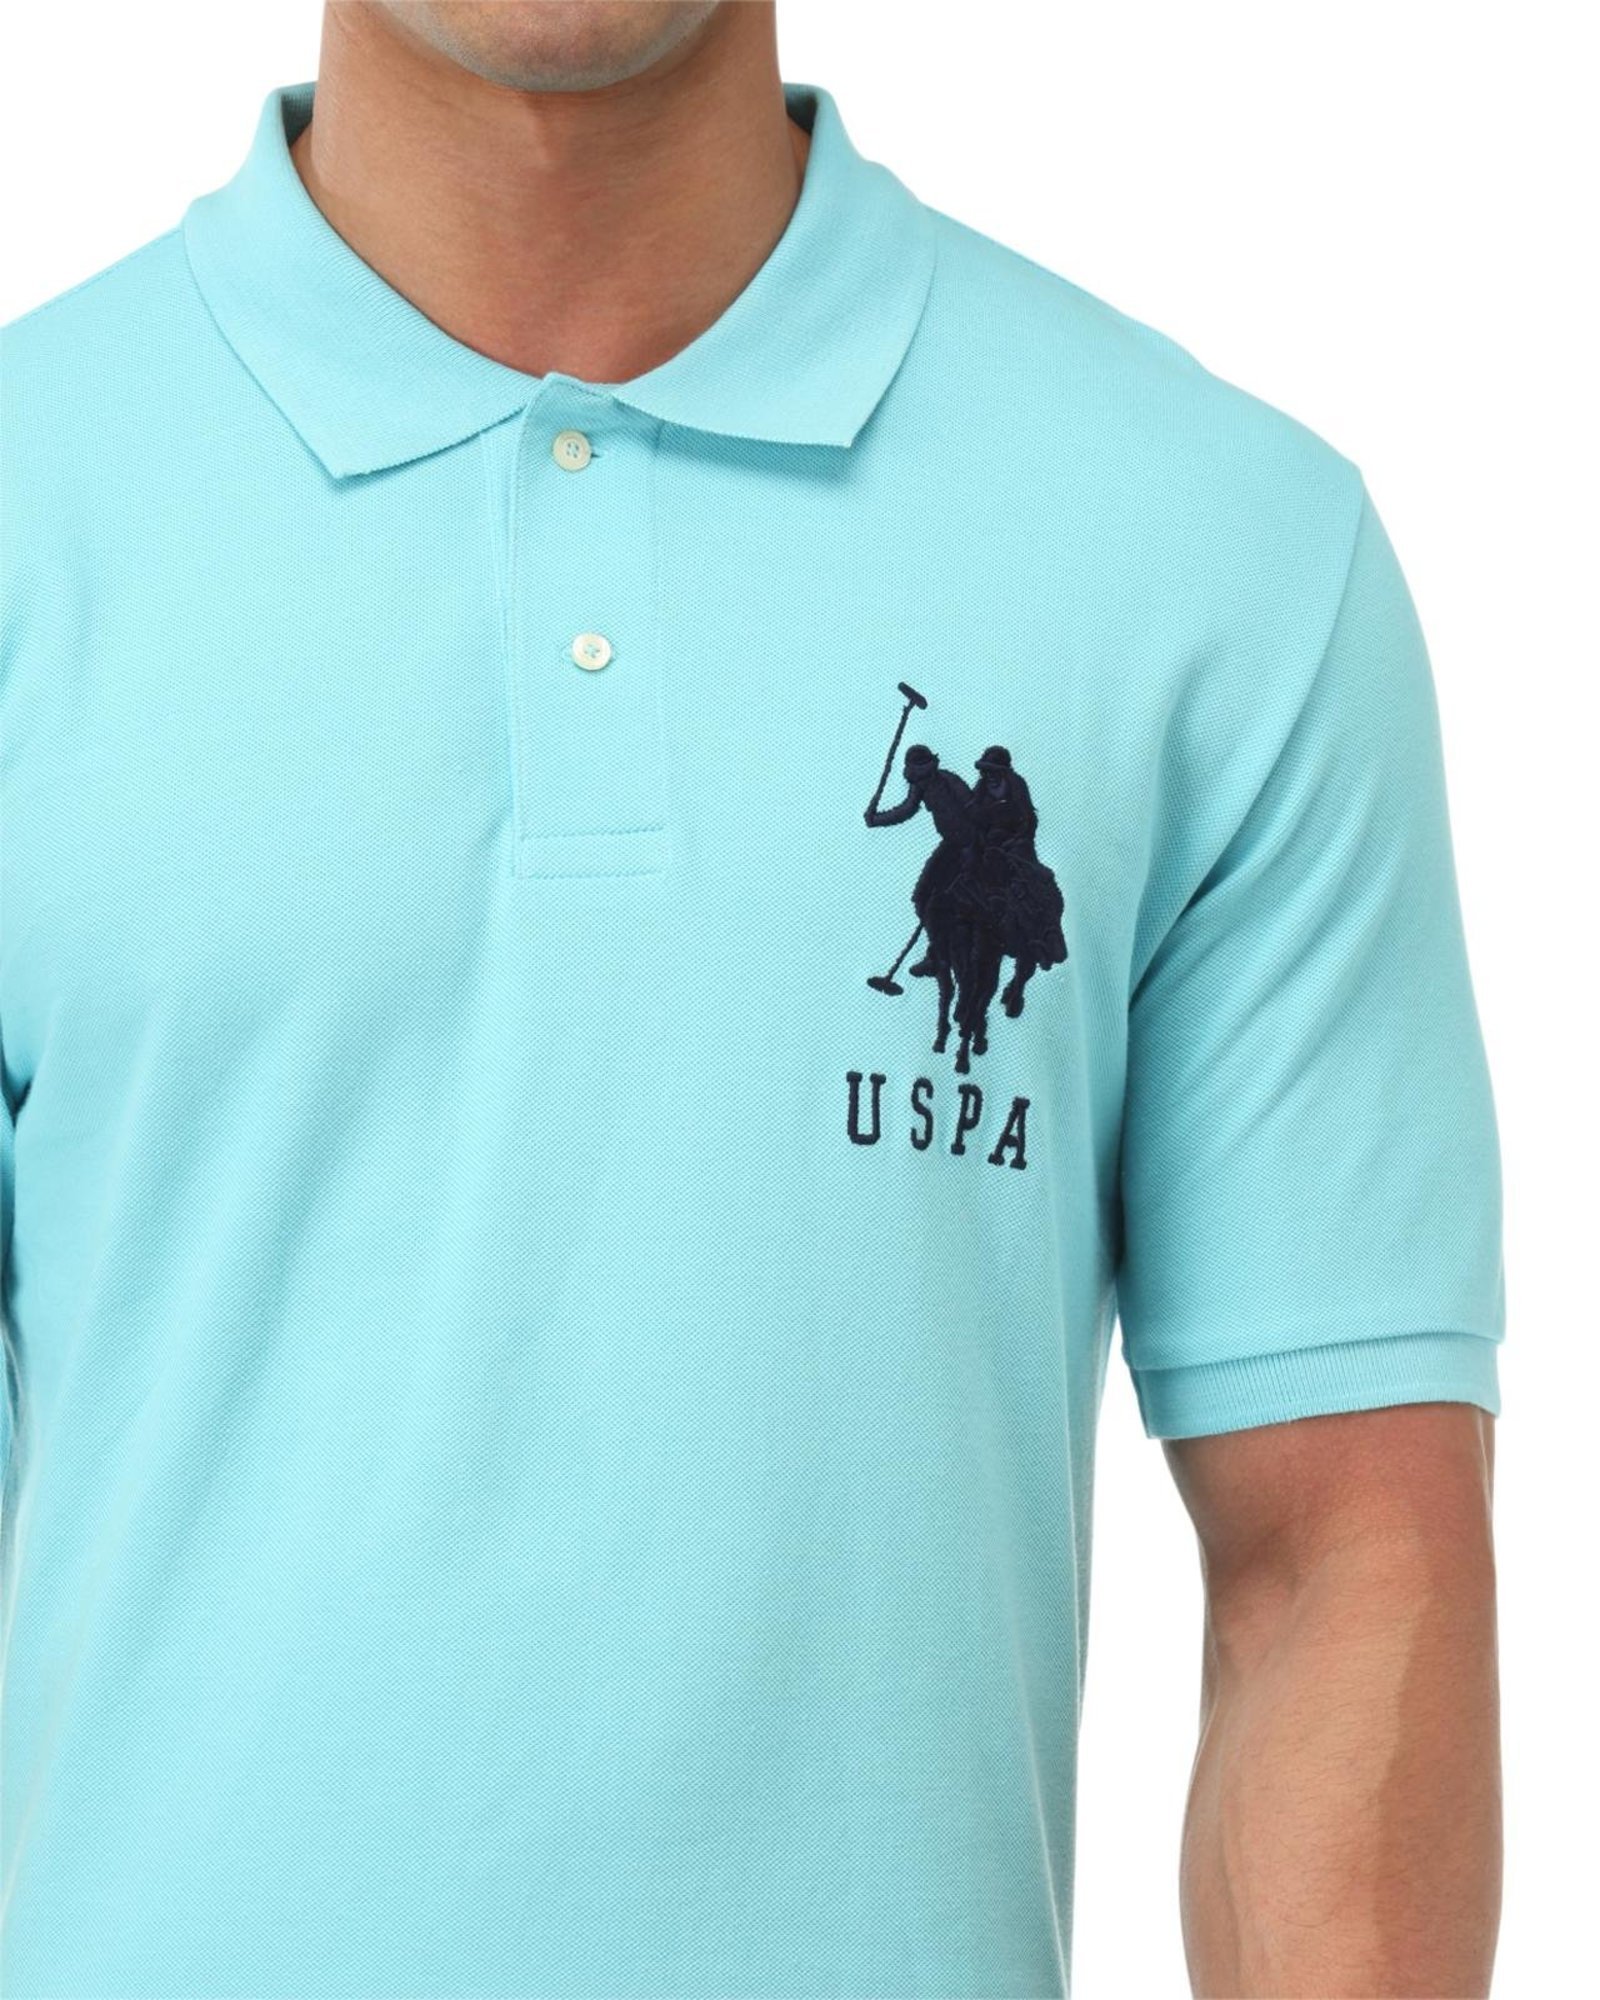 Us polo assn blue t shirt formal vouchers